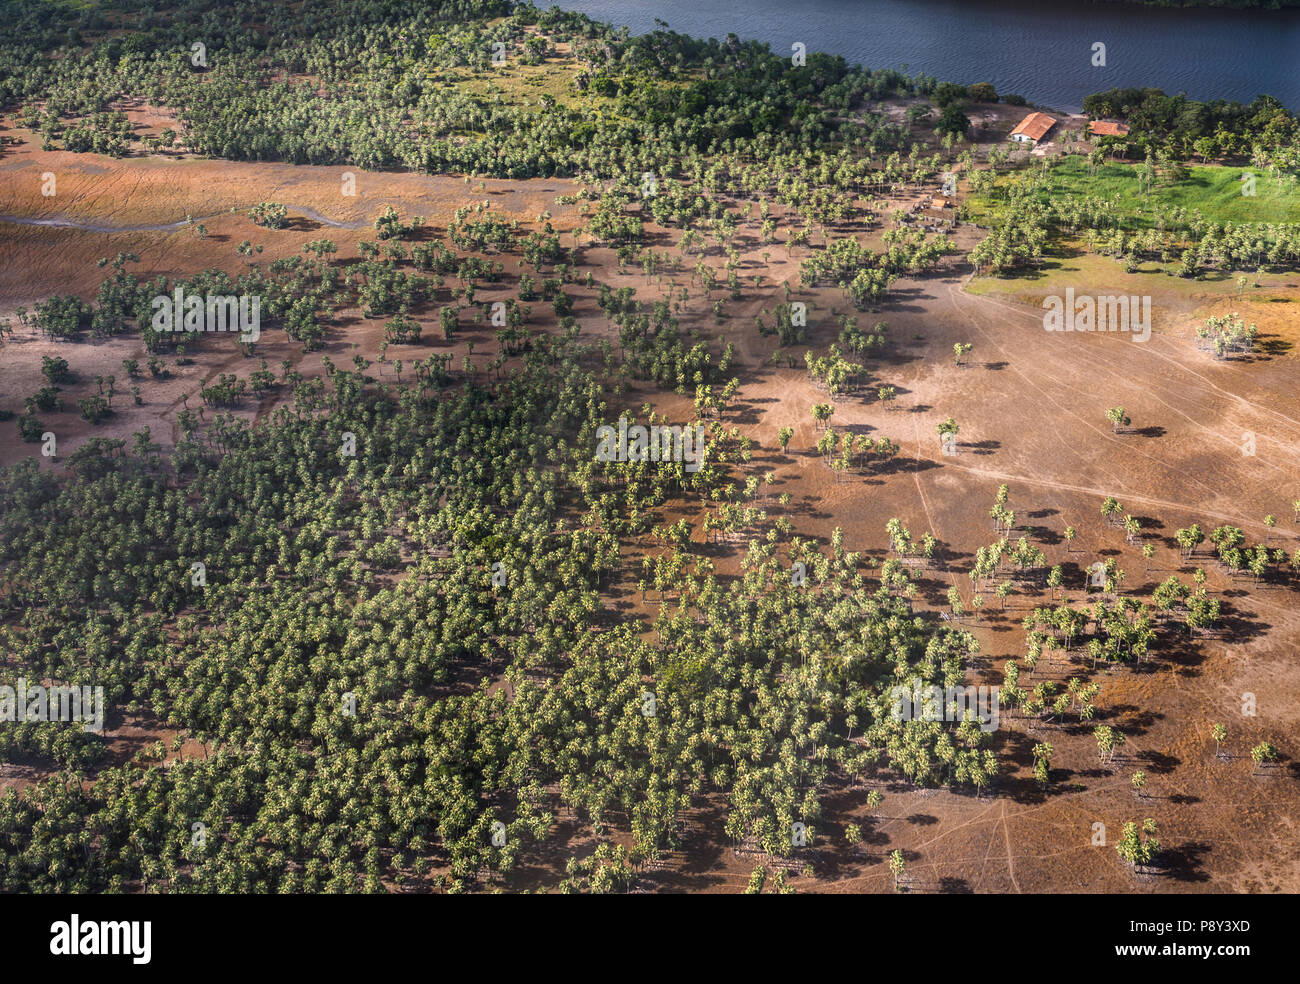 Blick aus dem Flugzeug zu einer Landung von Cashew Bäume in die Lencois Maranhenses Nationalpark, Brasilien Stockfoto